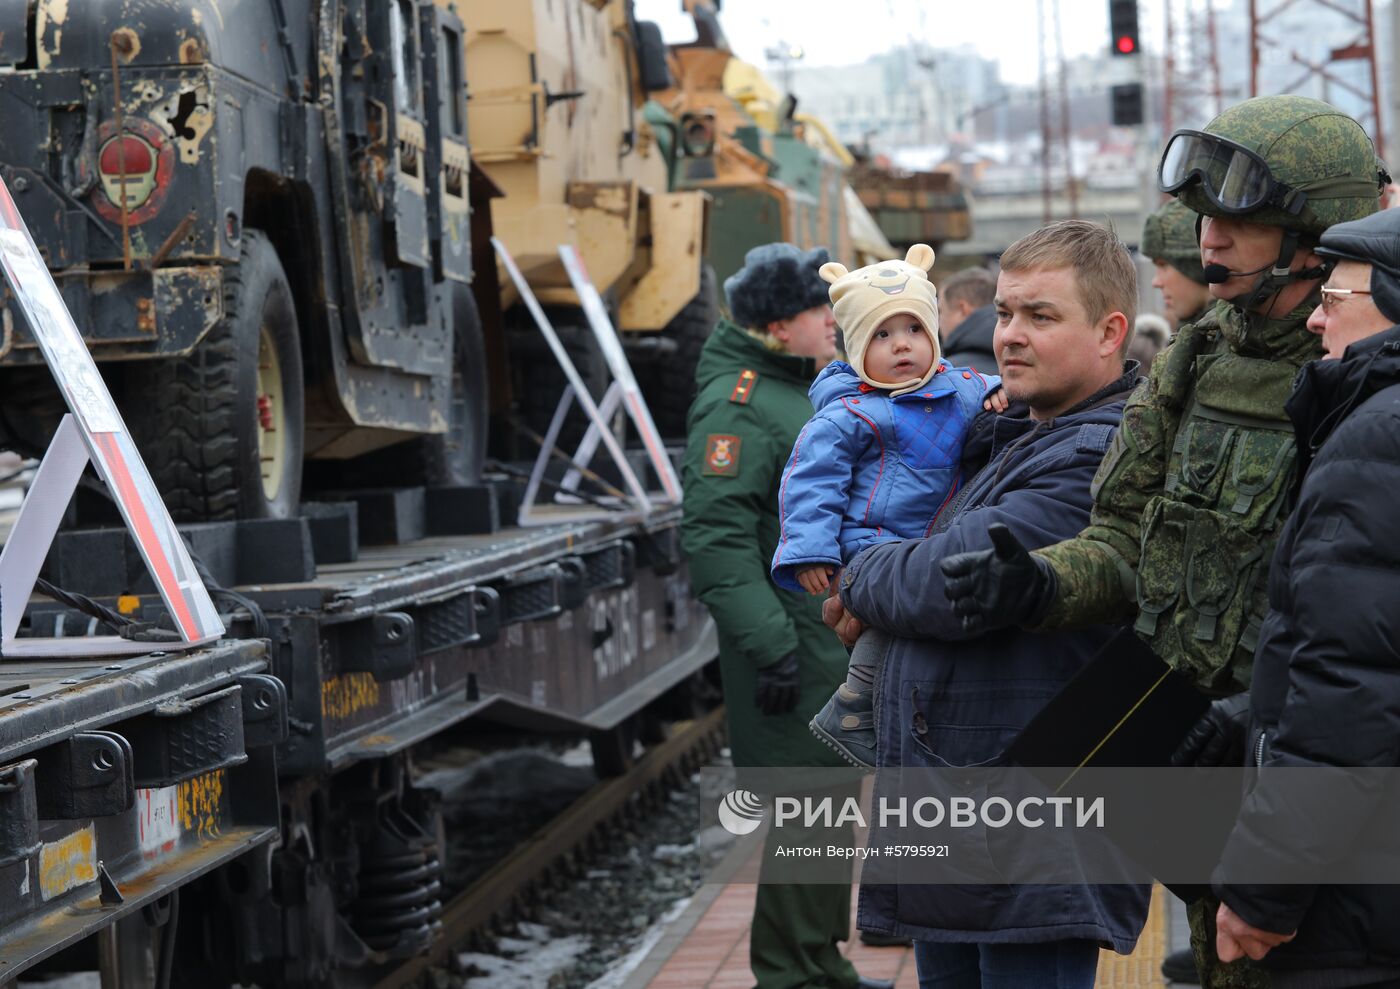 Прибытие поезда "Сирийский перелом" в Белгород